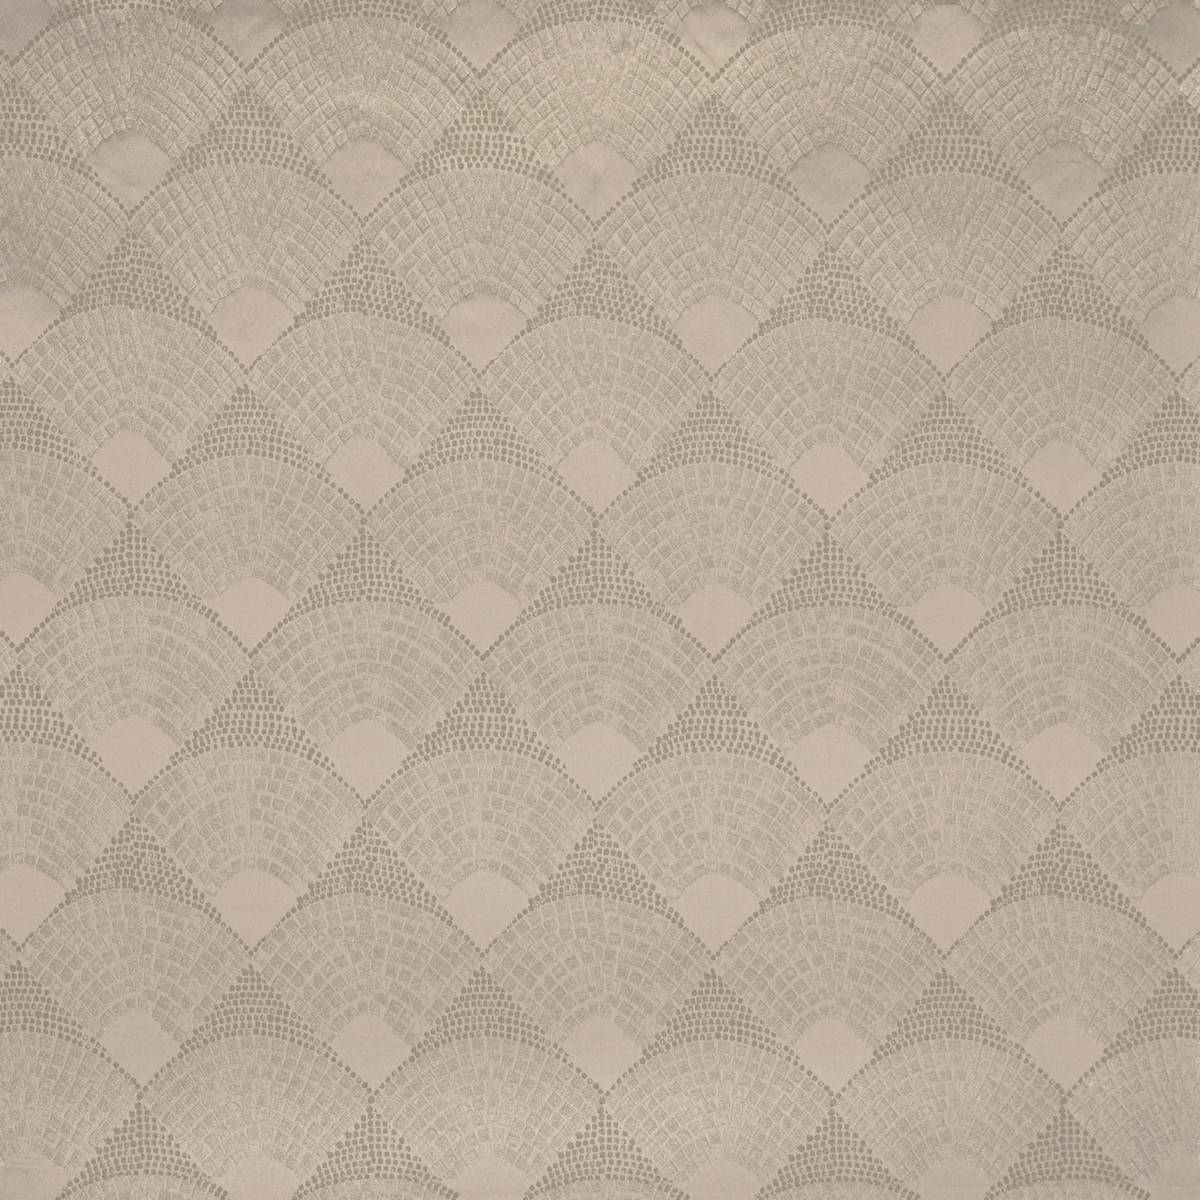 Radiate Stonewash Fabric by Prestigious Textiles